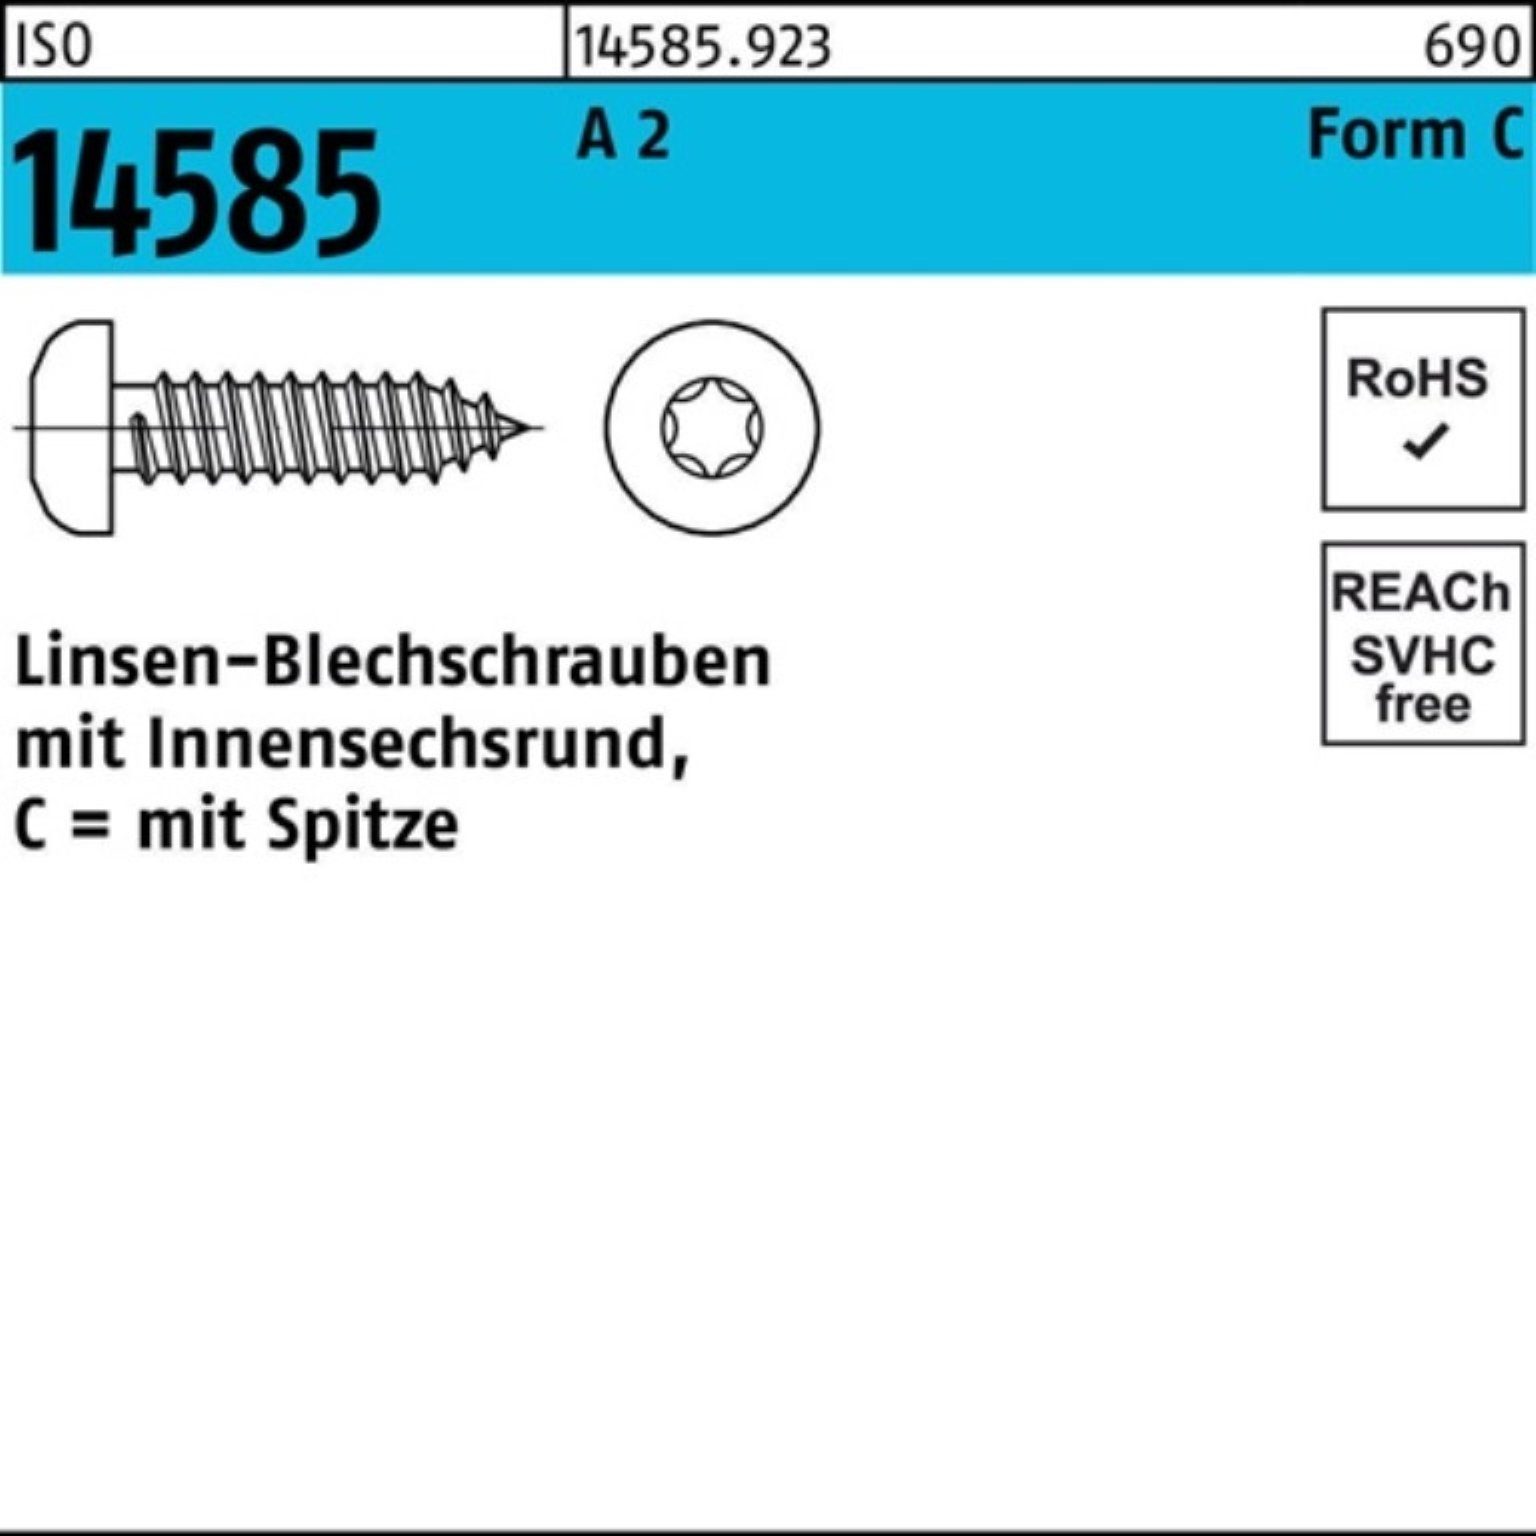 ISO Pack Reyher 70 250 St T25 ISR 5,5x 250er Linsenblechschraube -C Blechschraube 14585 A 2